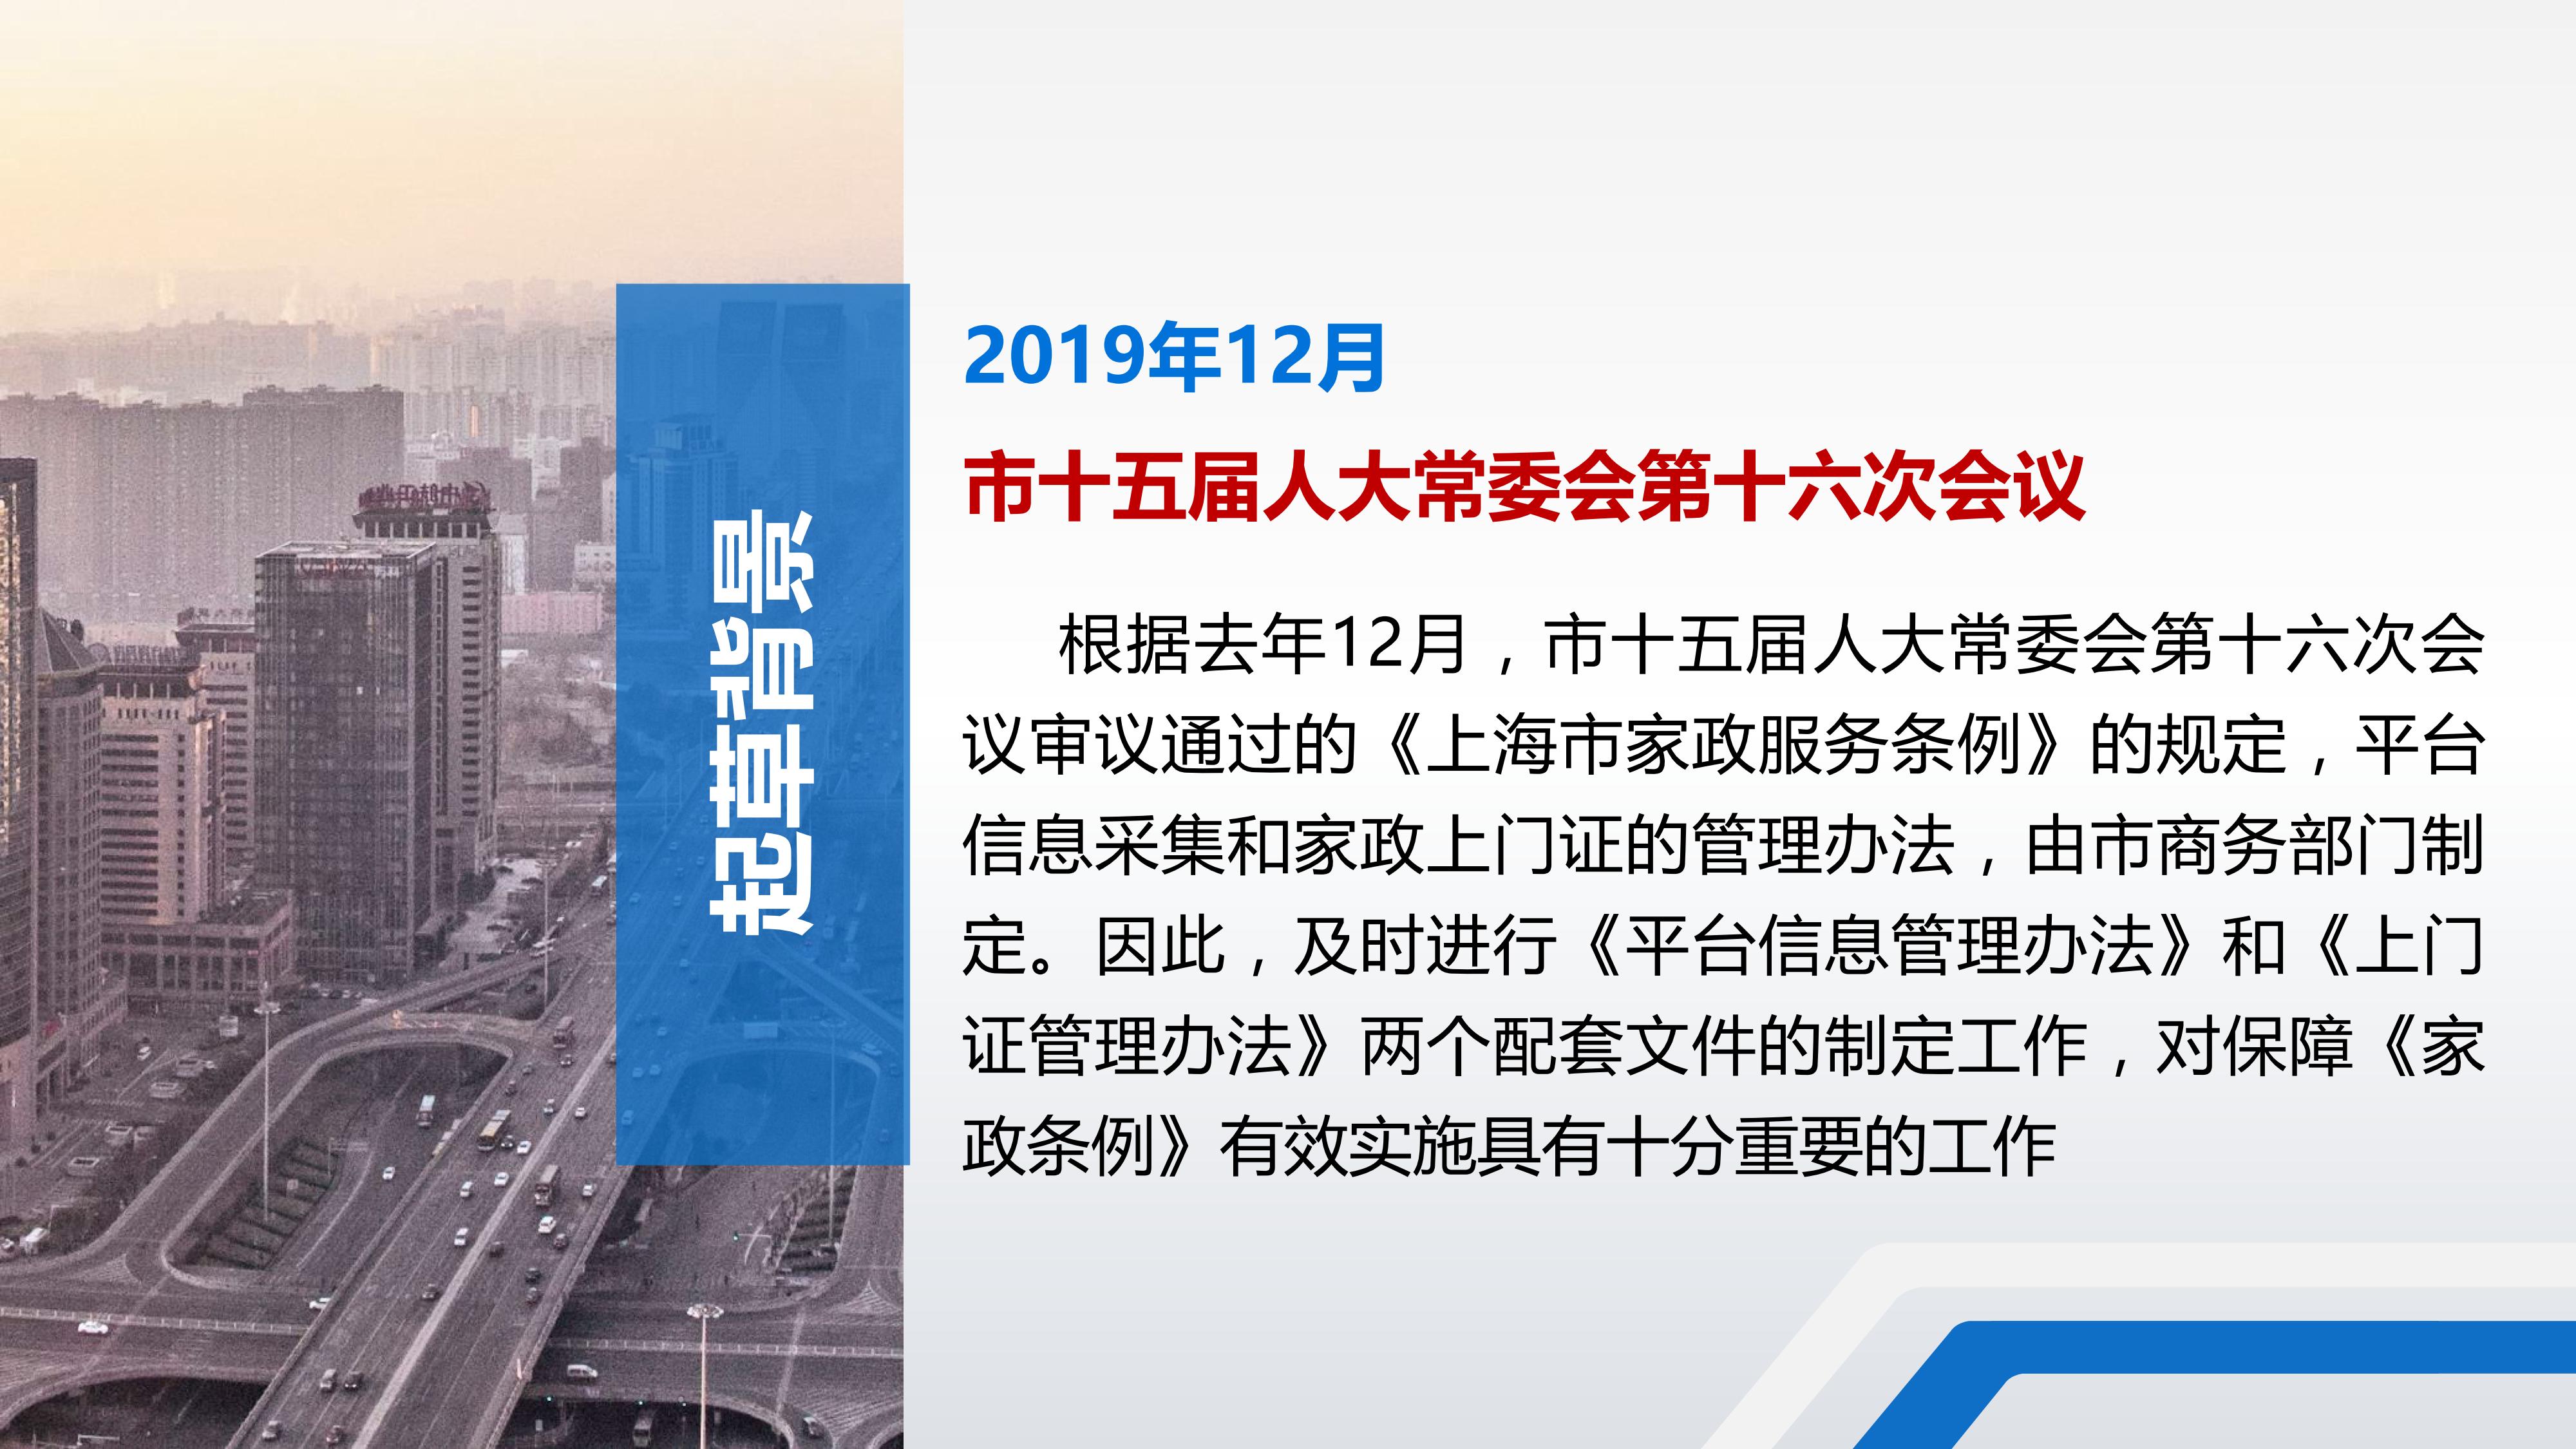 上海市家政服务管理平台信息管理暂行办法_02